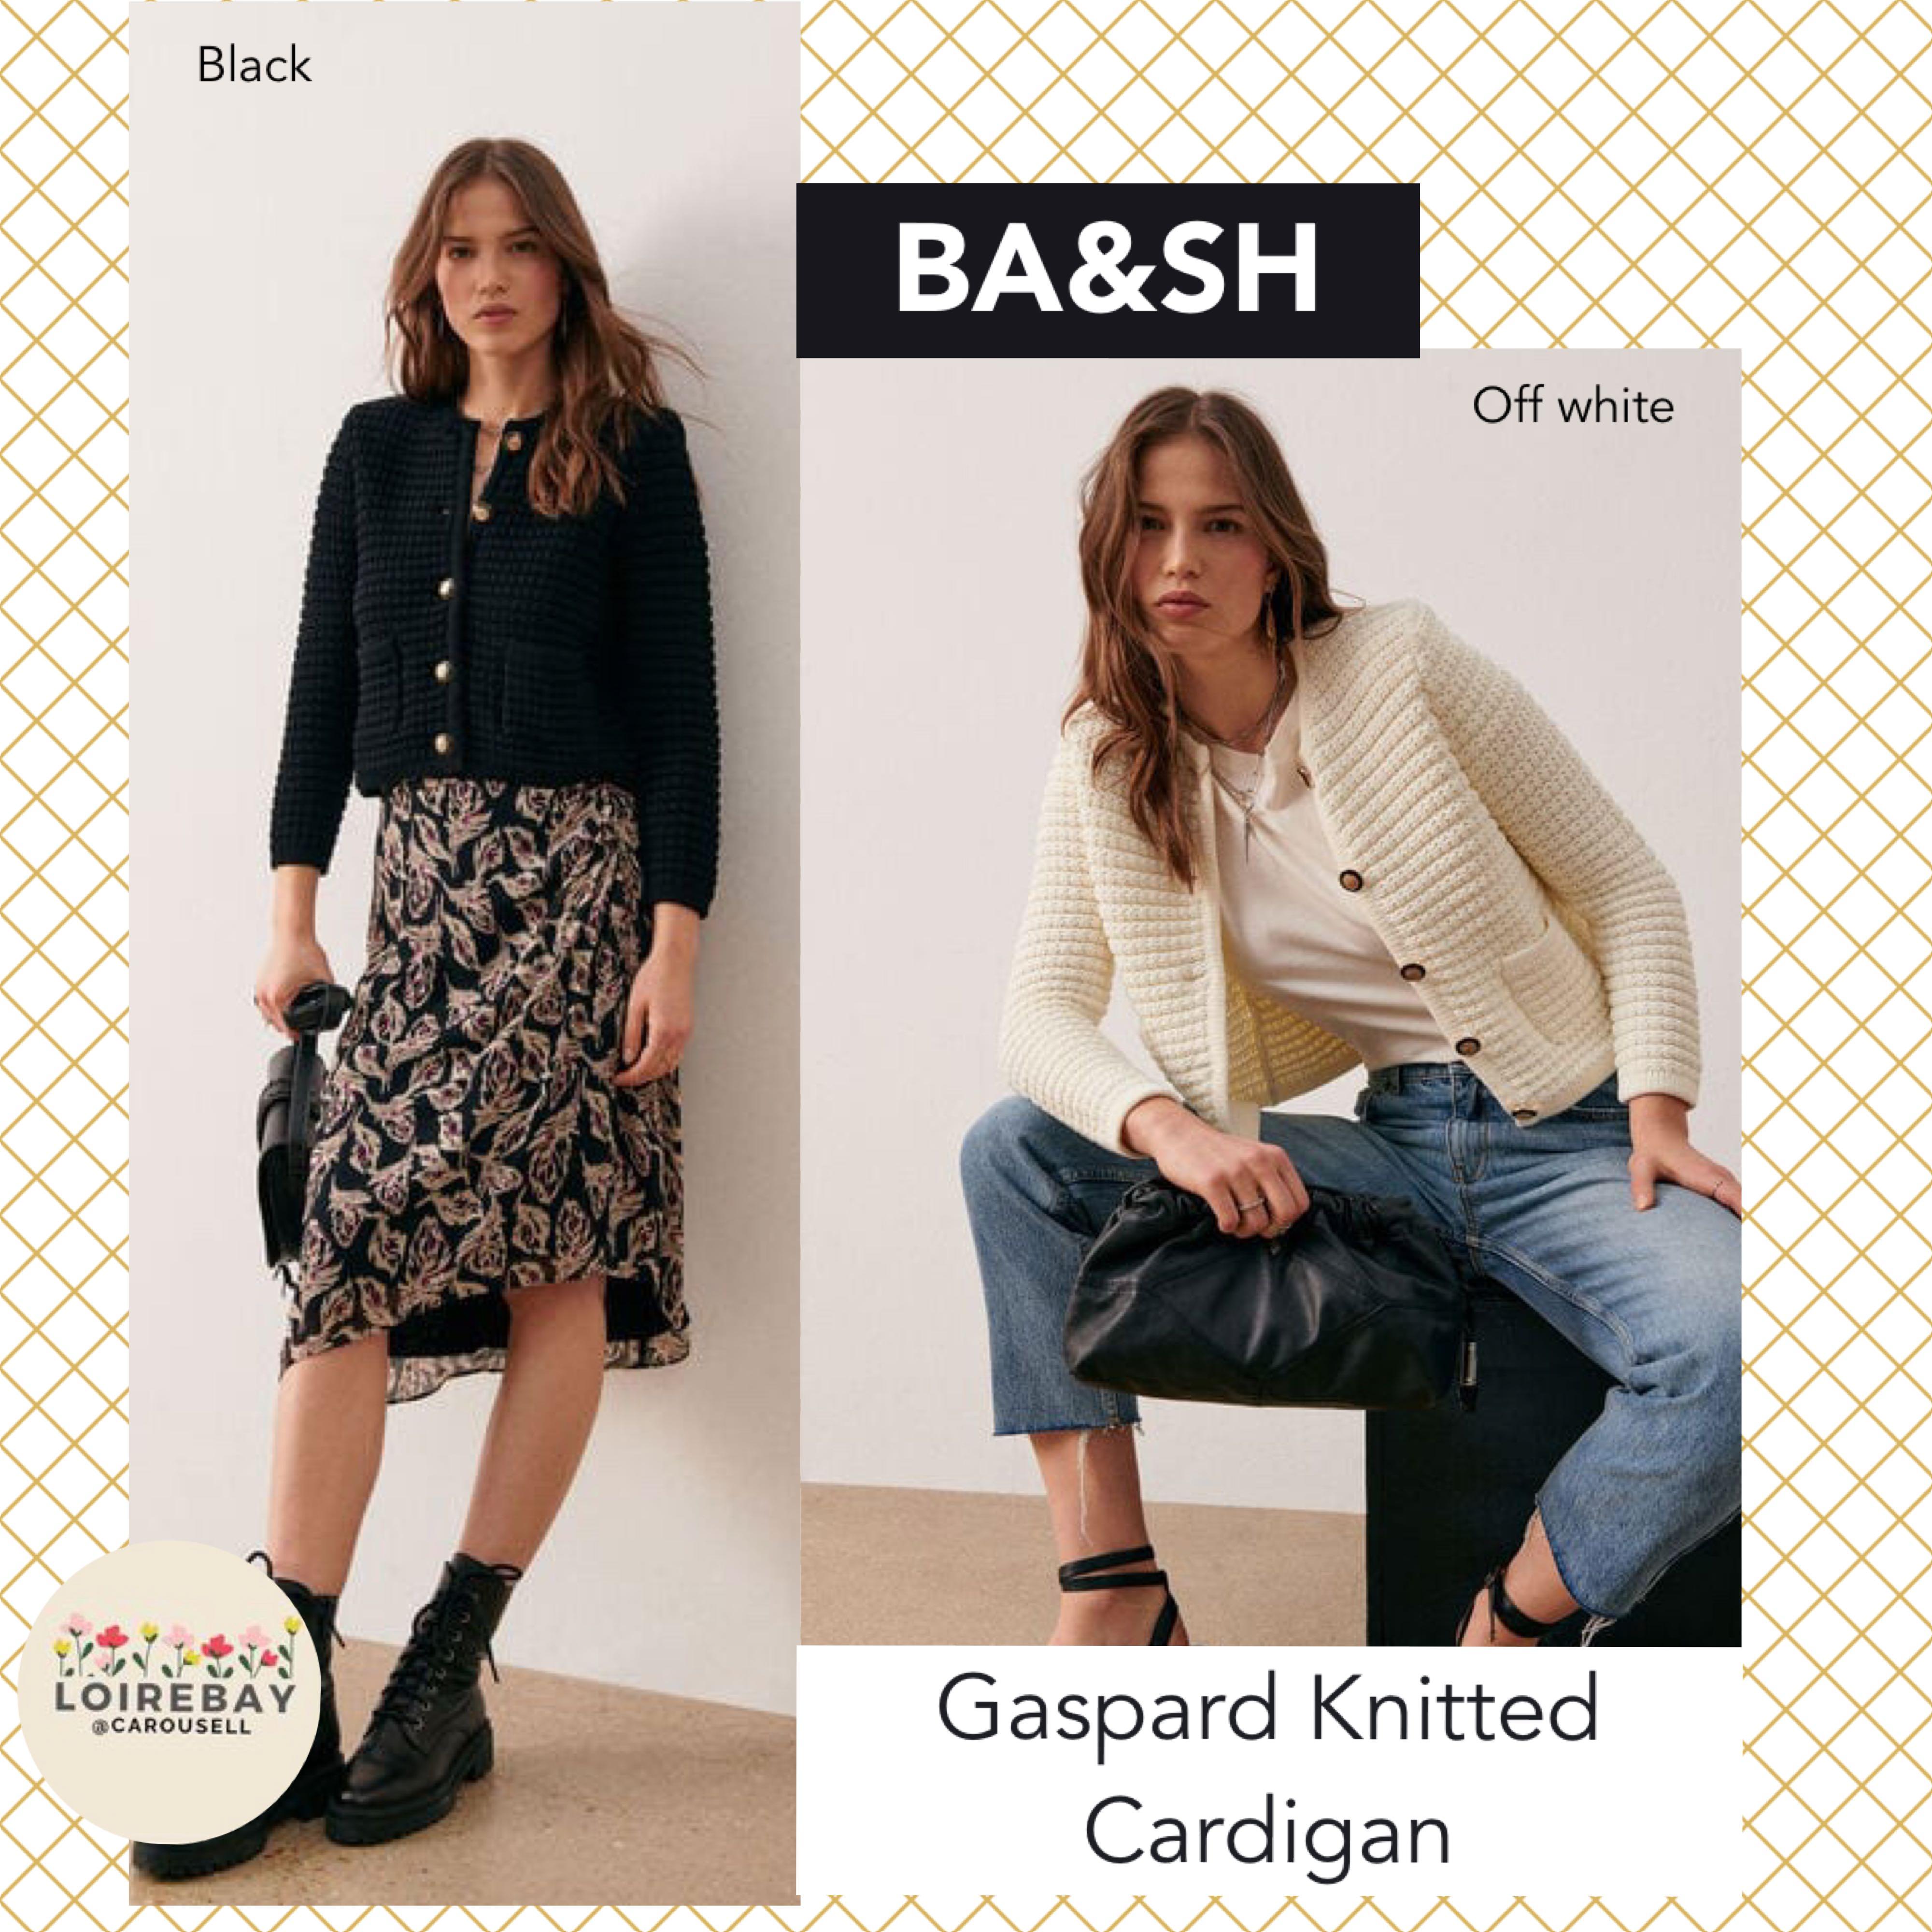 Ba&sh Gaspard Knitted Cardigan Black